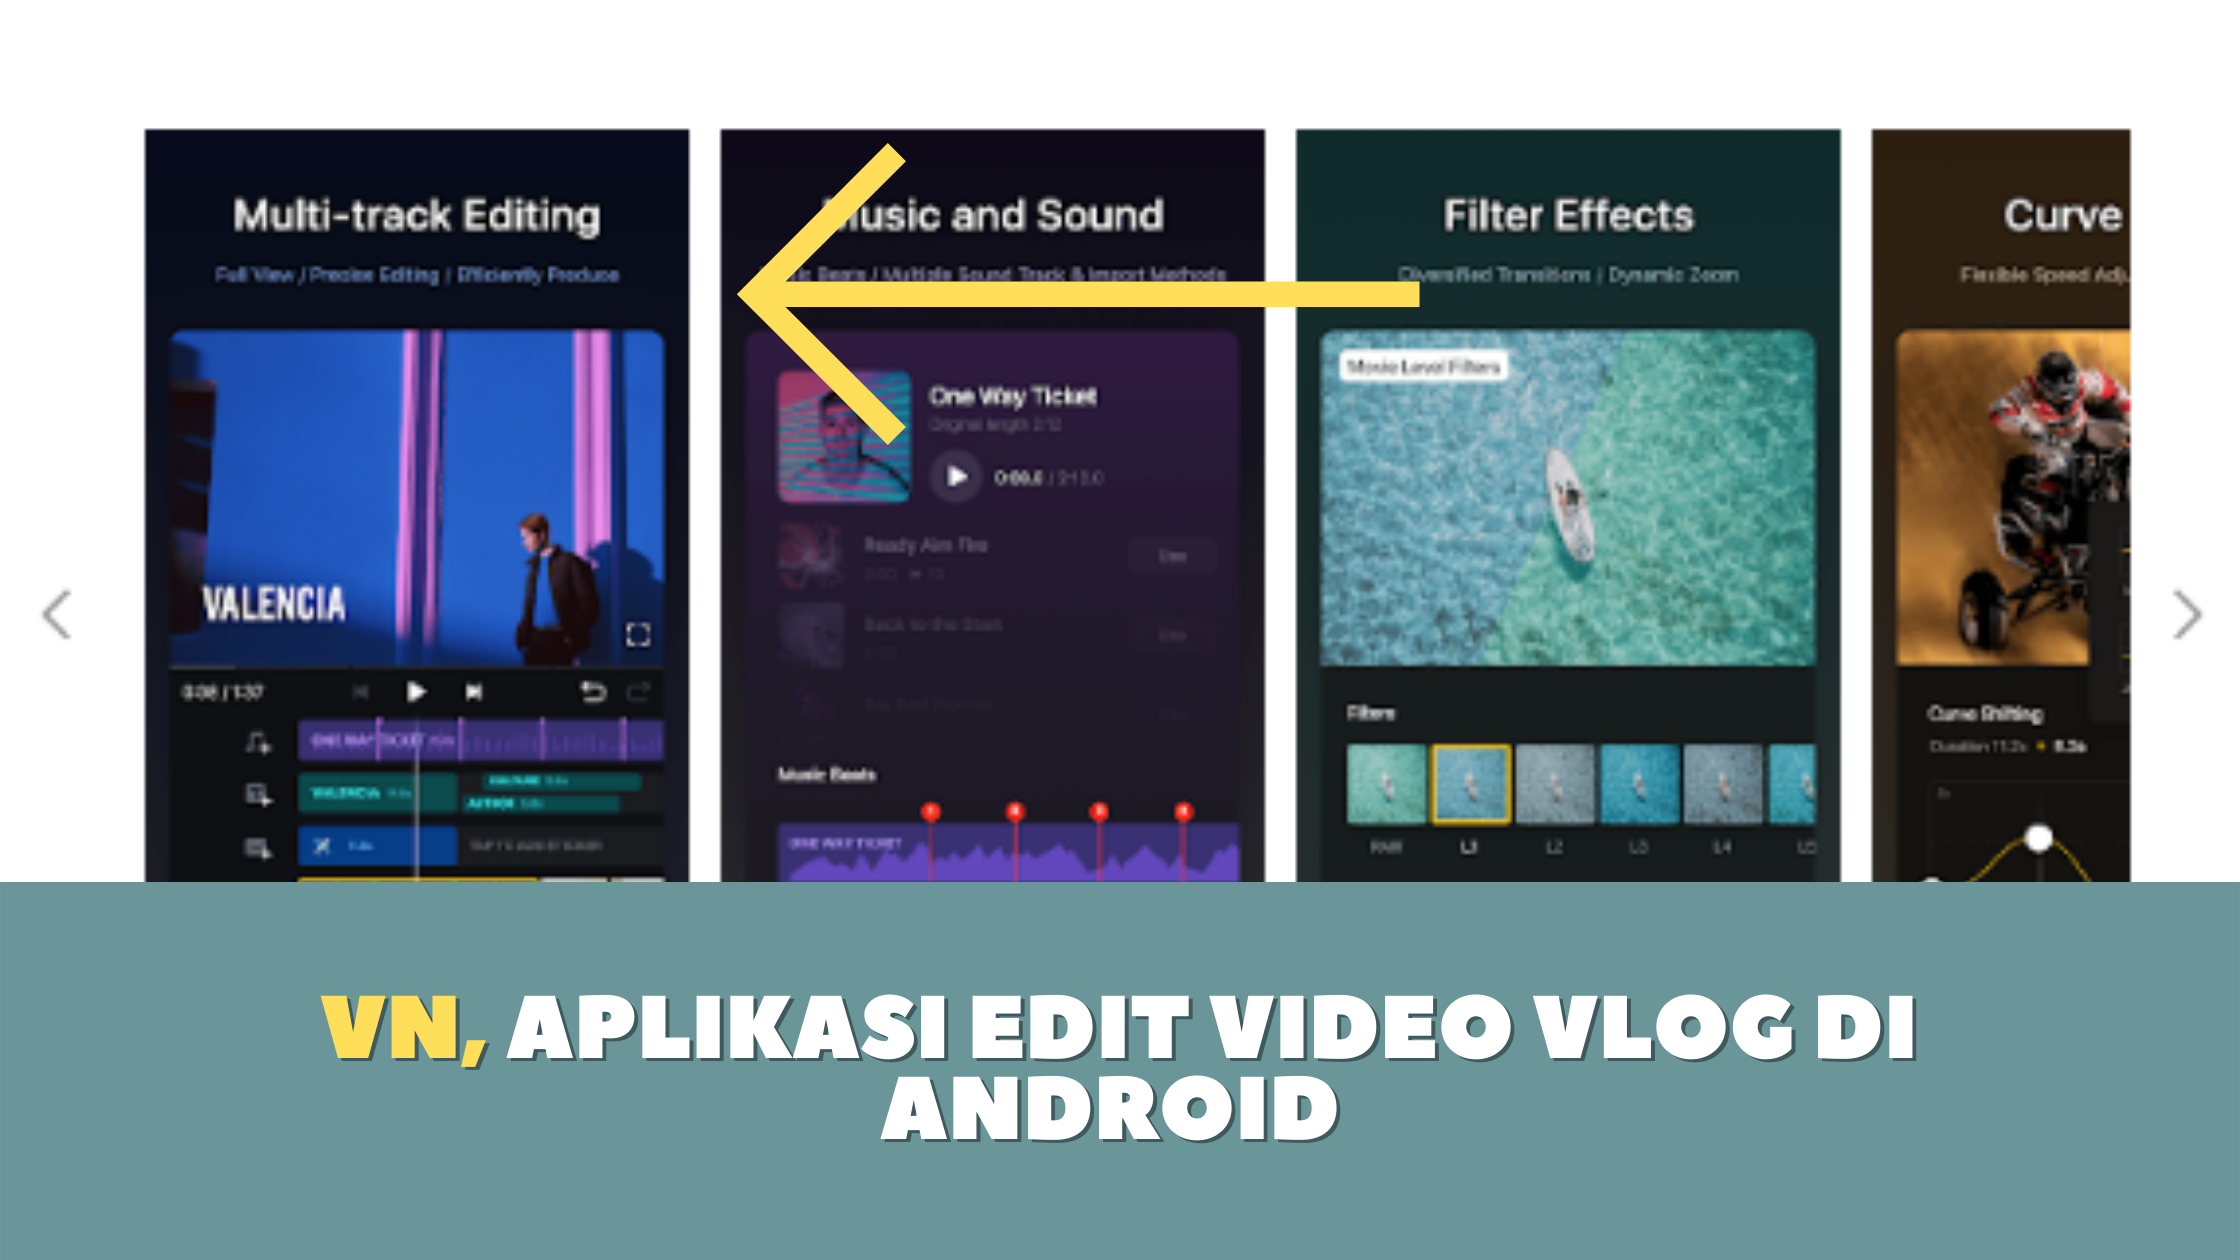 VN, Aplikasi Edit Video Vlog di Android 